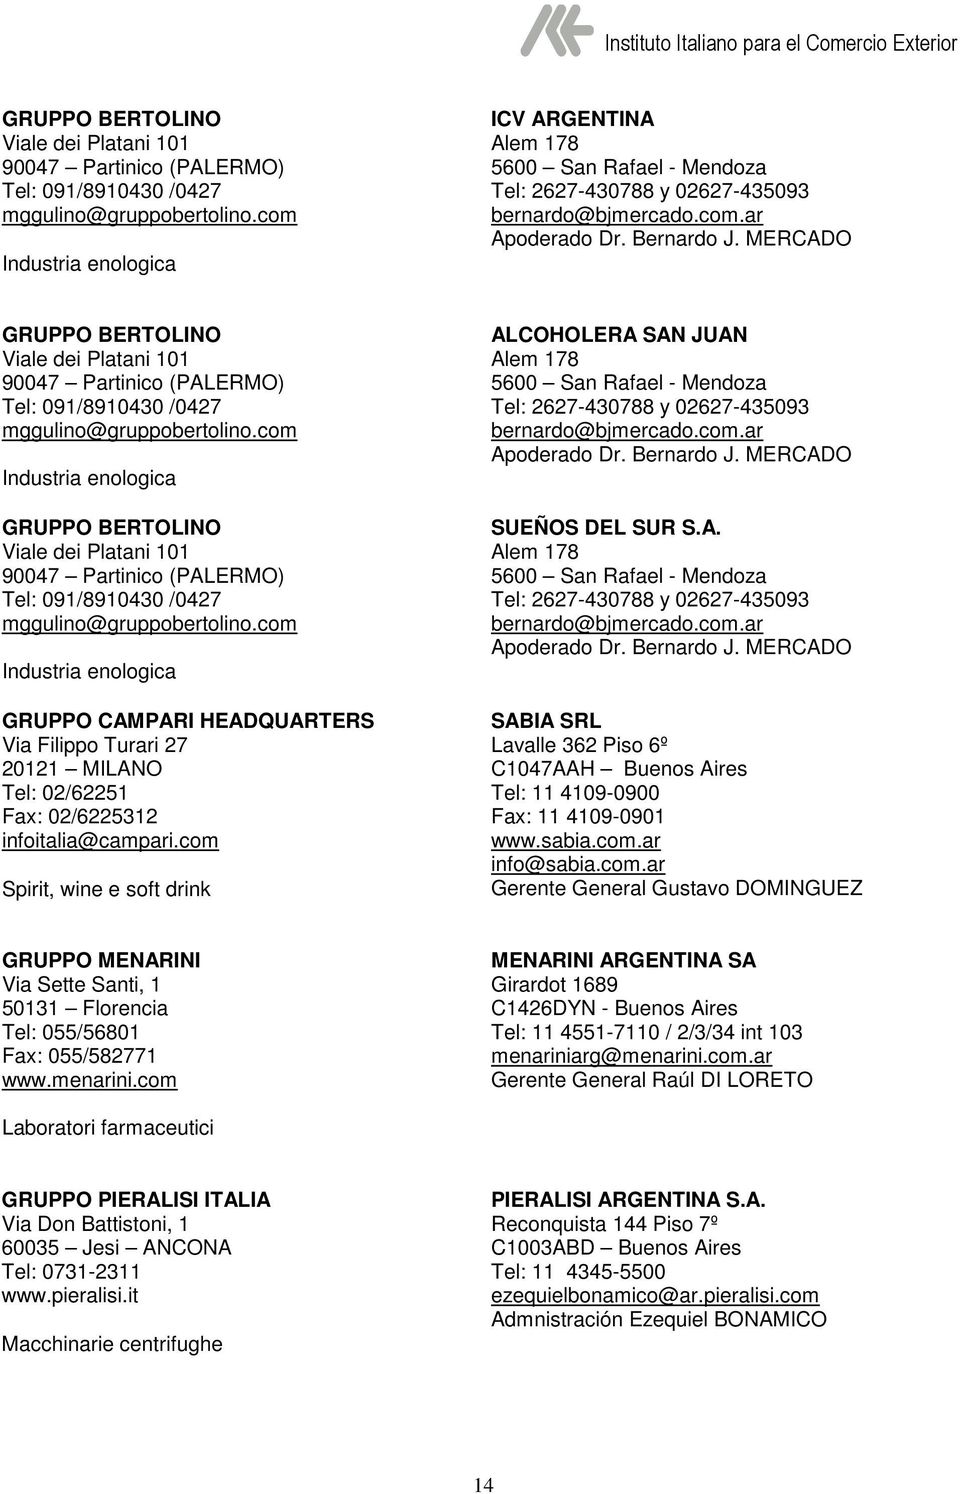 MERCADO com Industria enologica com Industria enologica GRUPPO CAMPARI HEADQUARTERS Via Filippo Turari 27 20121 MILANO Tel: 02/62251 Fax: 02/6225312 infoitalia@campari.